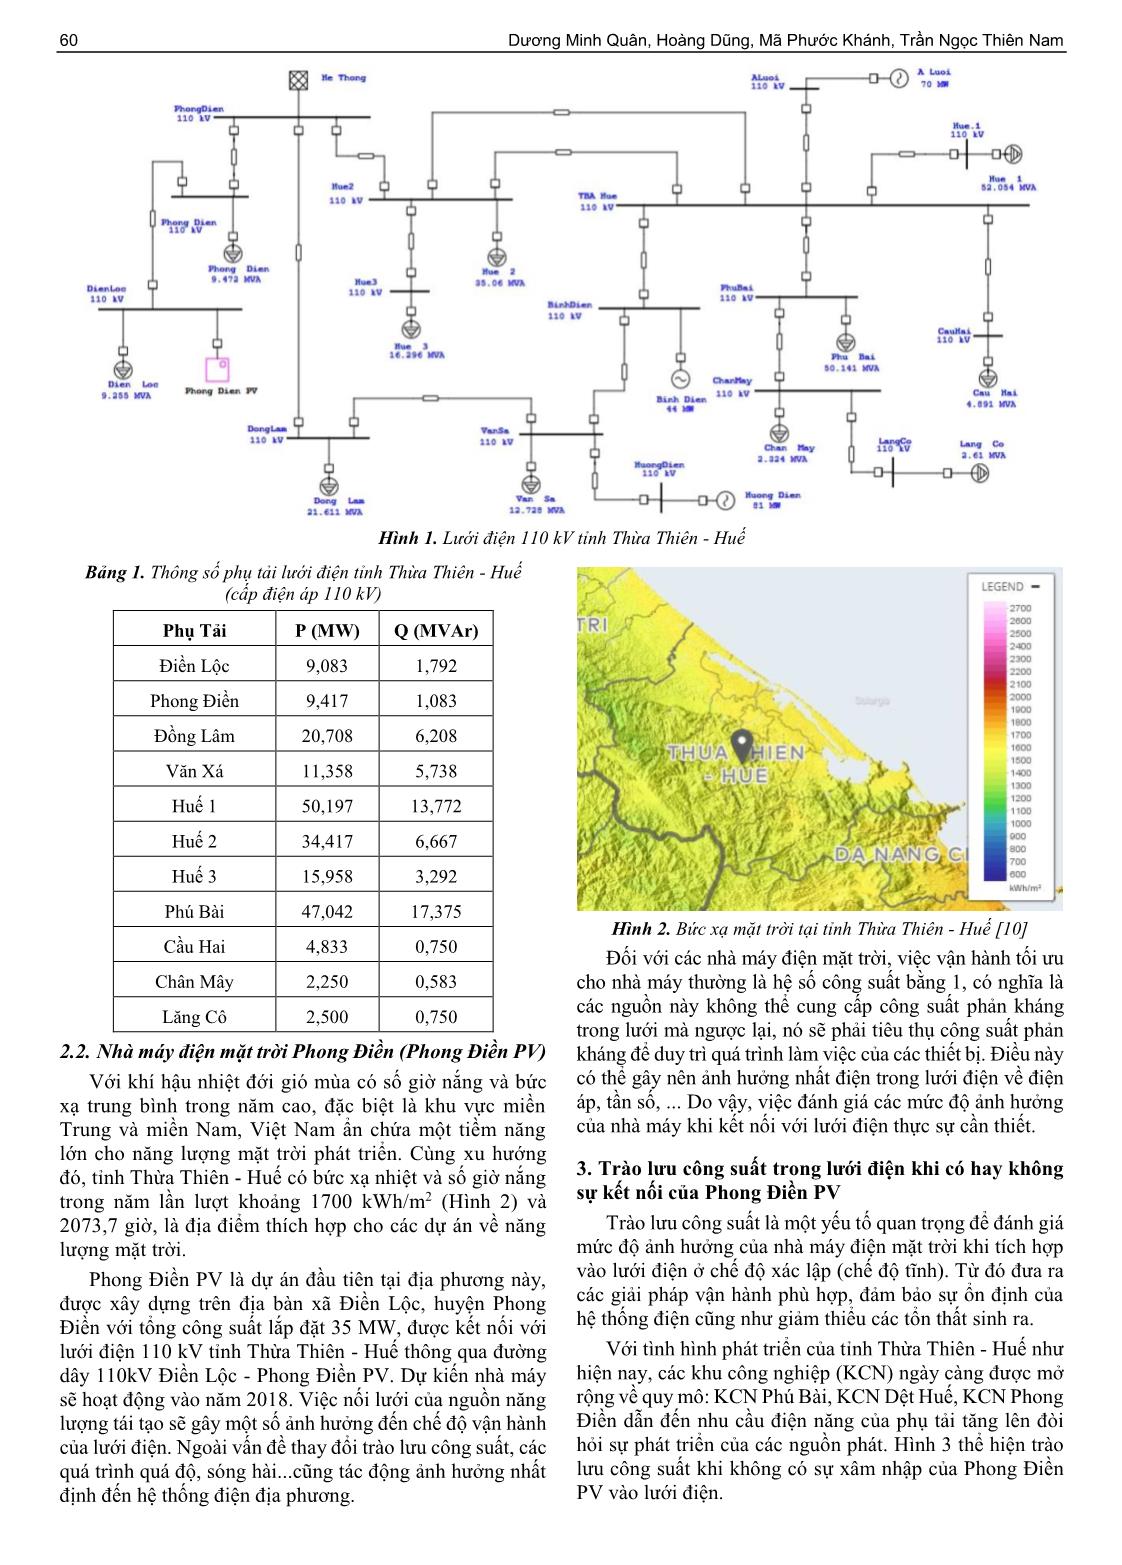 Nghiên cứu ảnh hưởng của nhà máy điện mặt trời phong điền đến lưới điện tỉnh Thừa Thiên - Huế trang 2